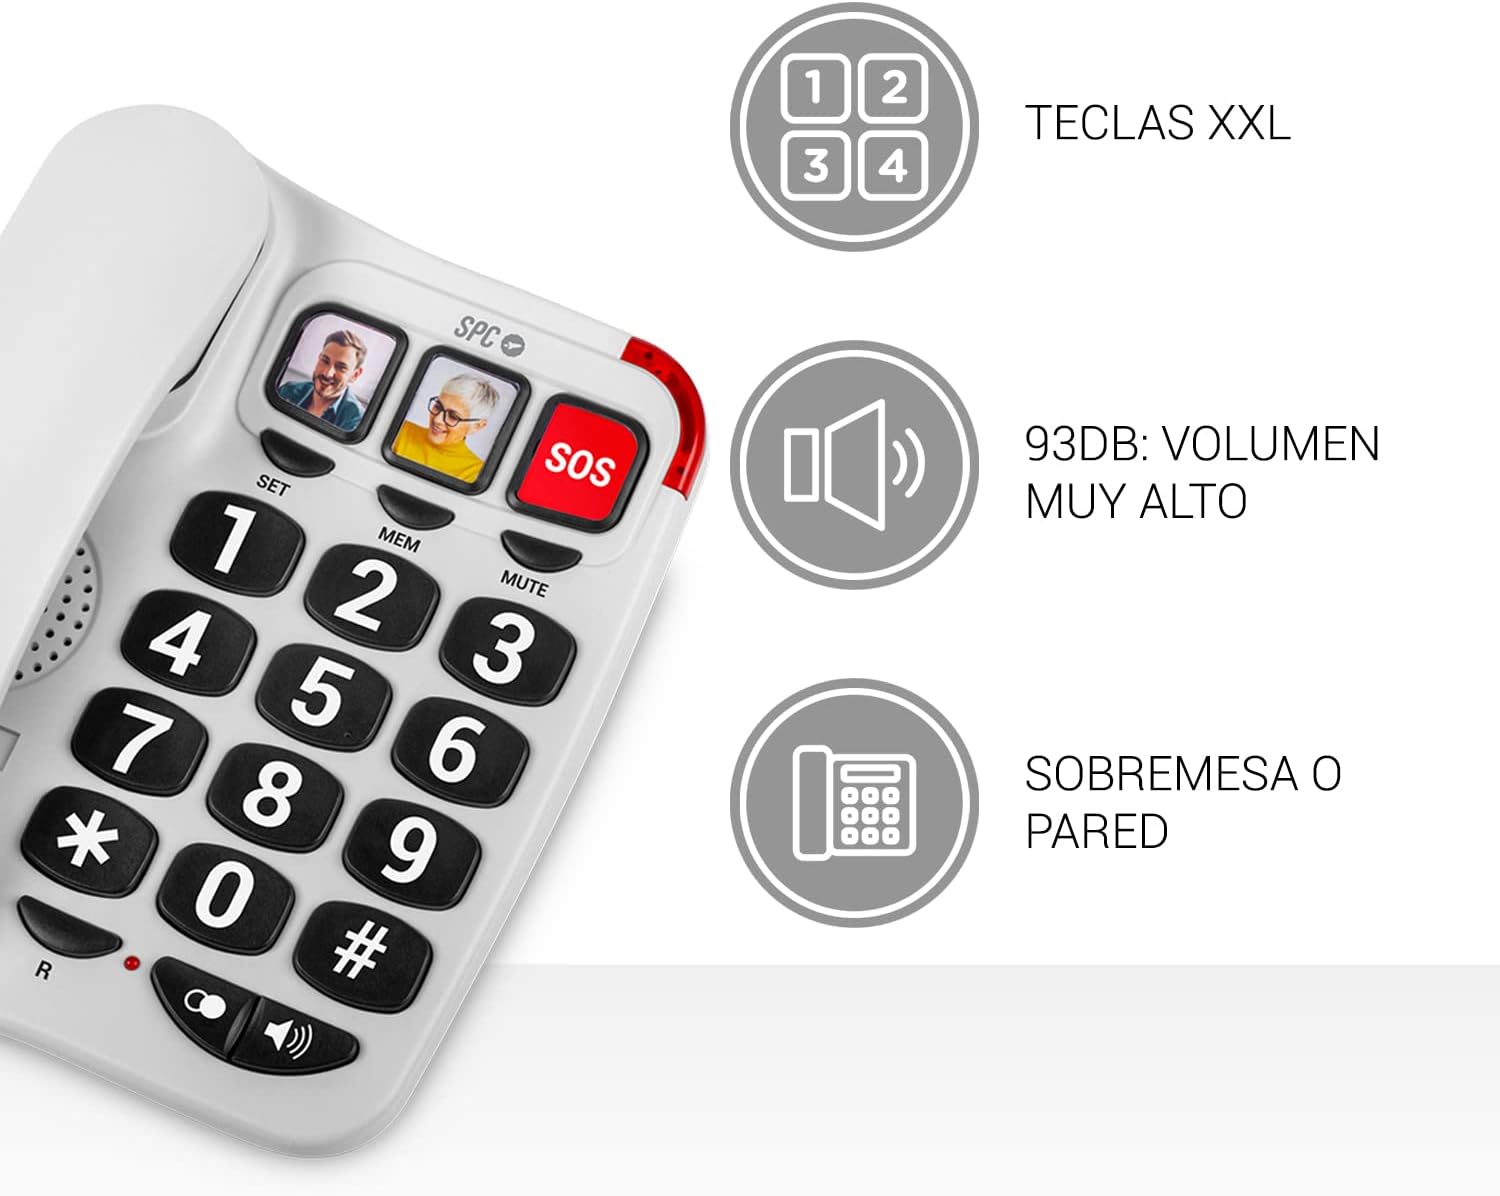 Téléphone fixe SPC pour seniors - Touches XXL - Appels One Touch - Volume de sonnerie 93Db - Compatible avec les appareils auditifs - Pas de piles ni de connexion lumière - Coloris Blanc